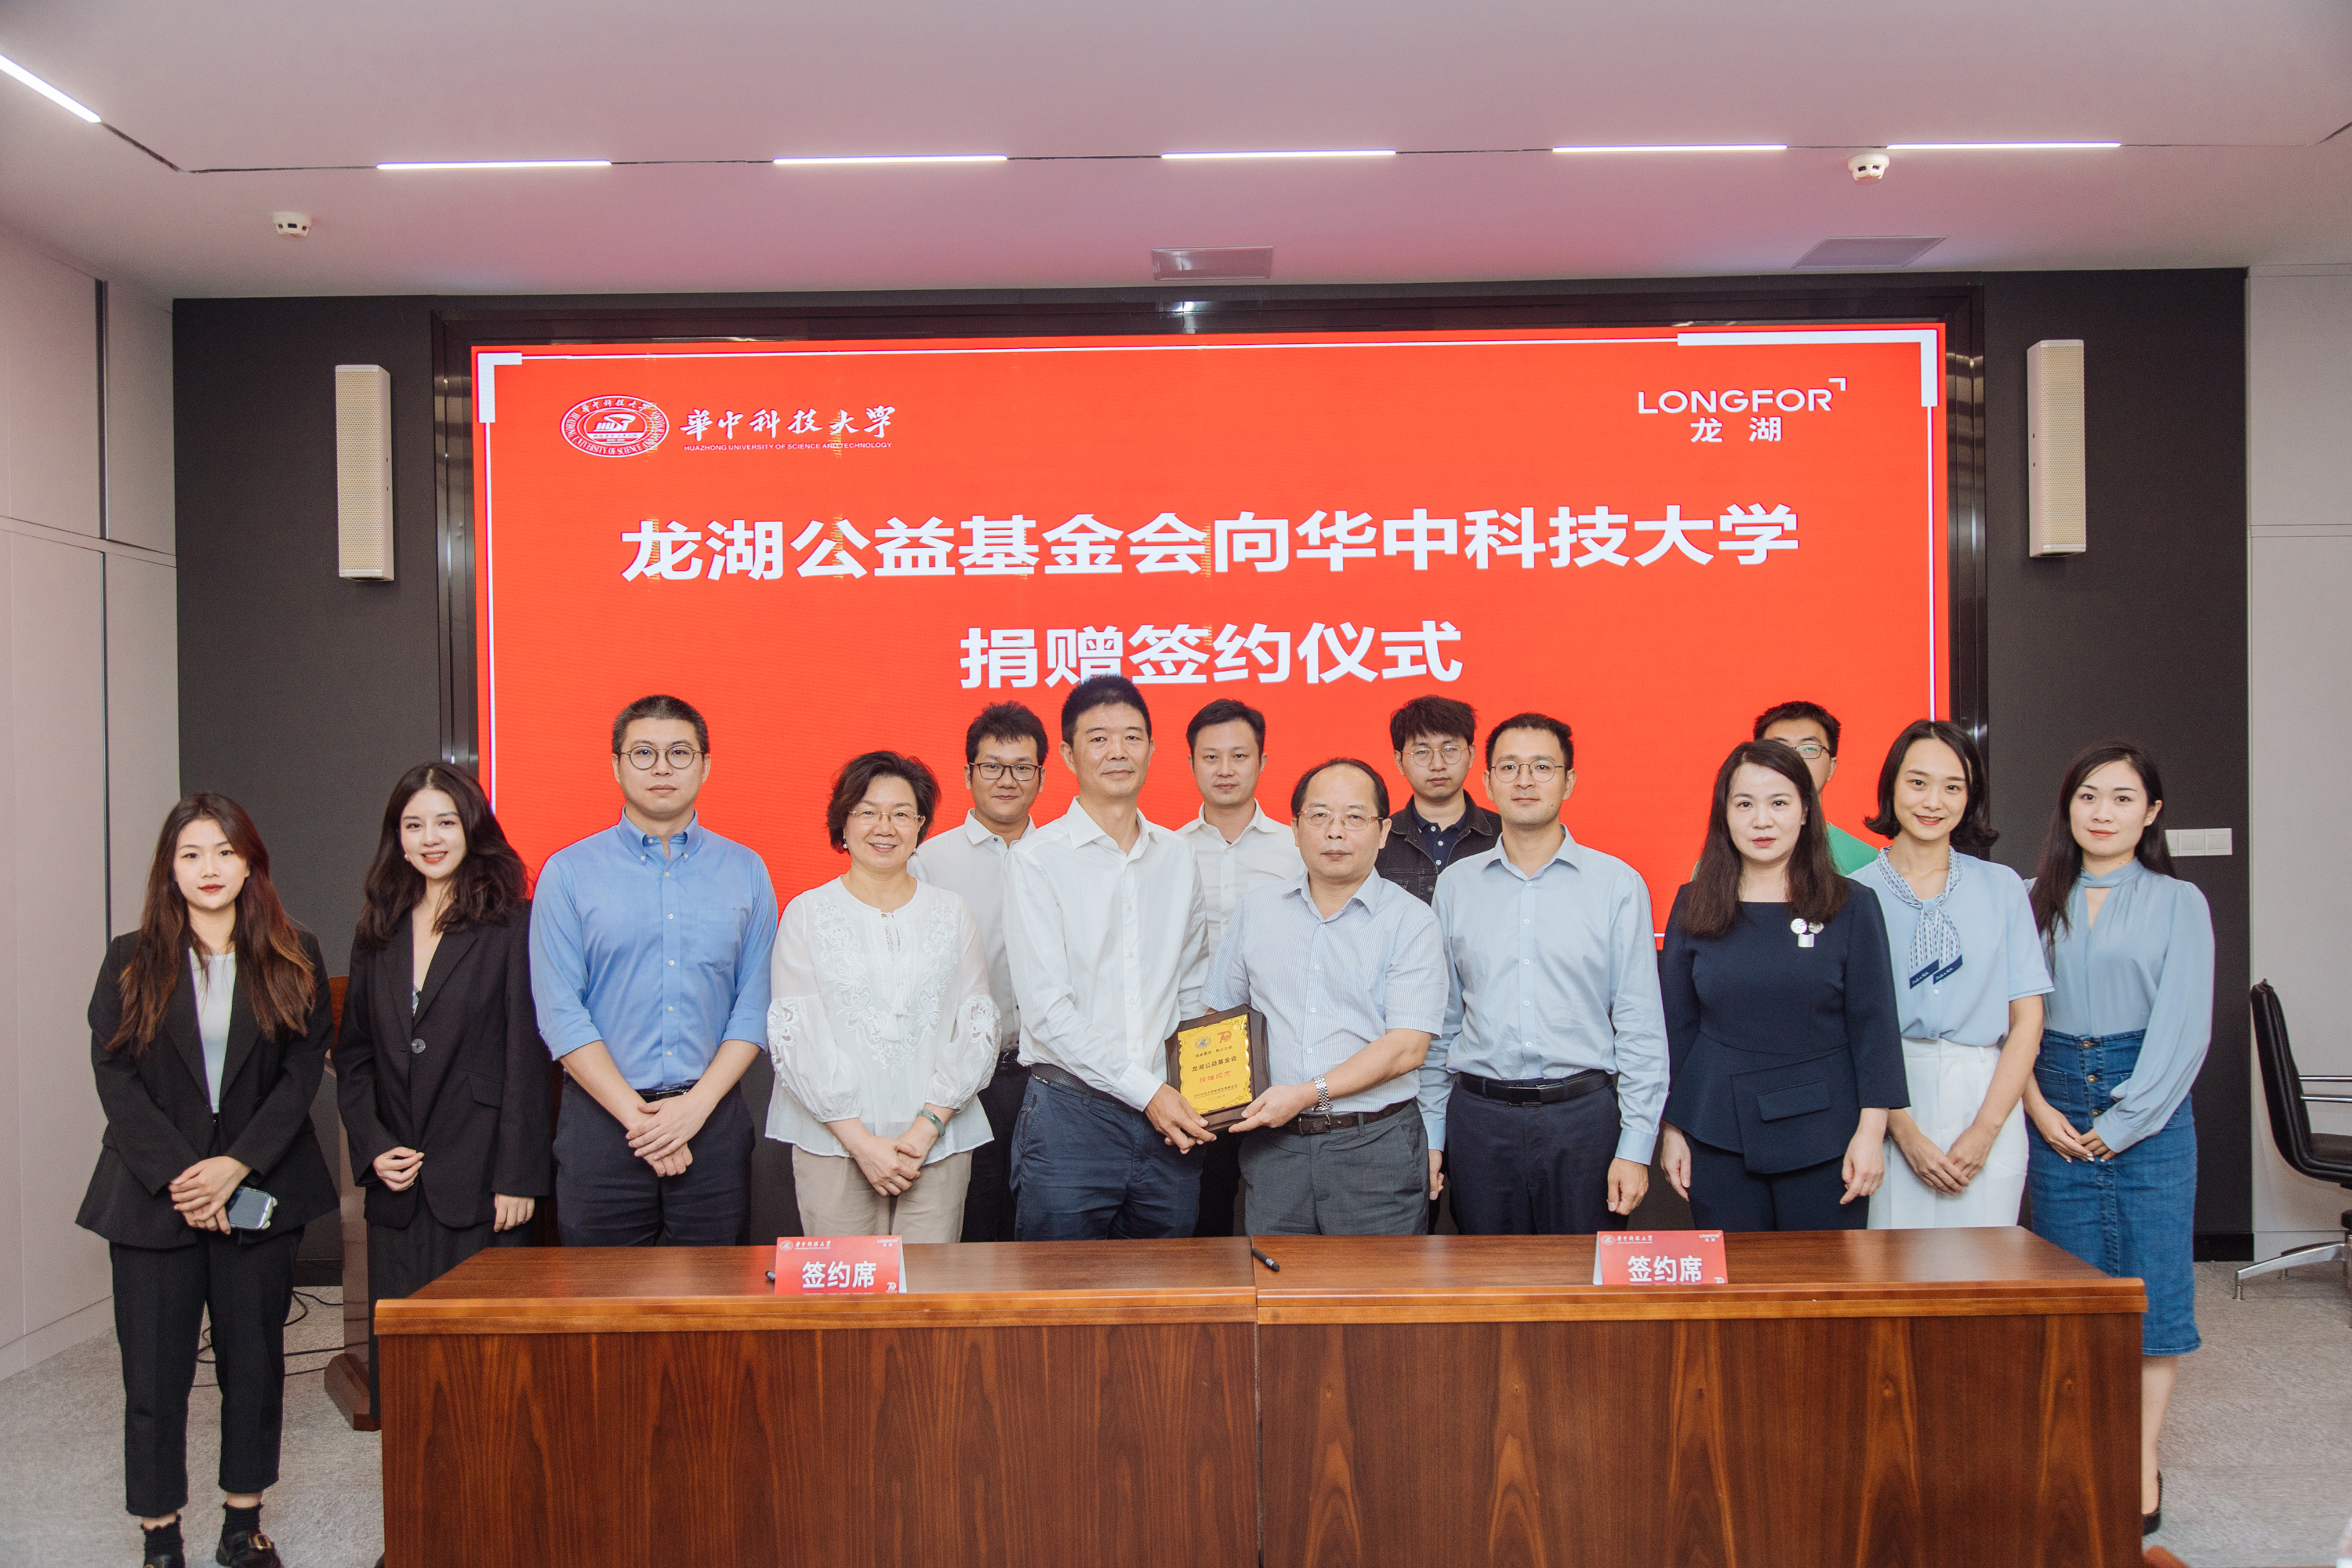 龙湖设立华中科技大学“龙湖奖学金”，以善待之心激发面向未来的新生力量